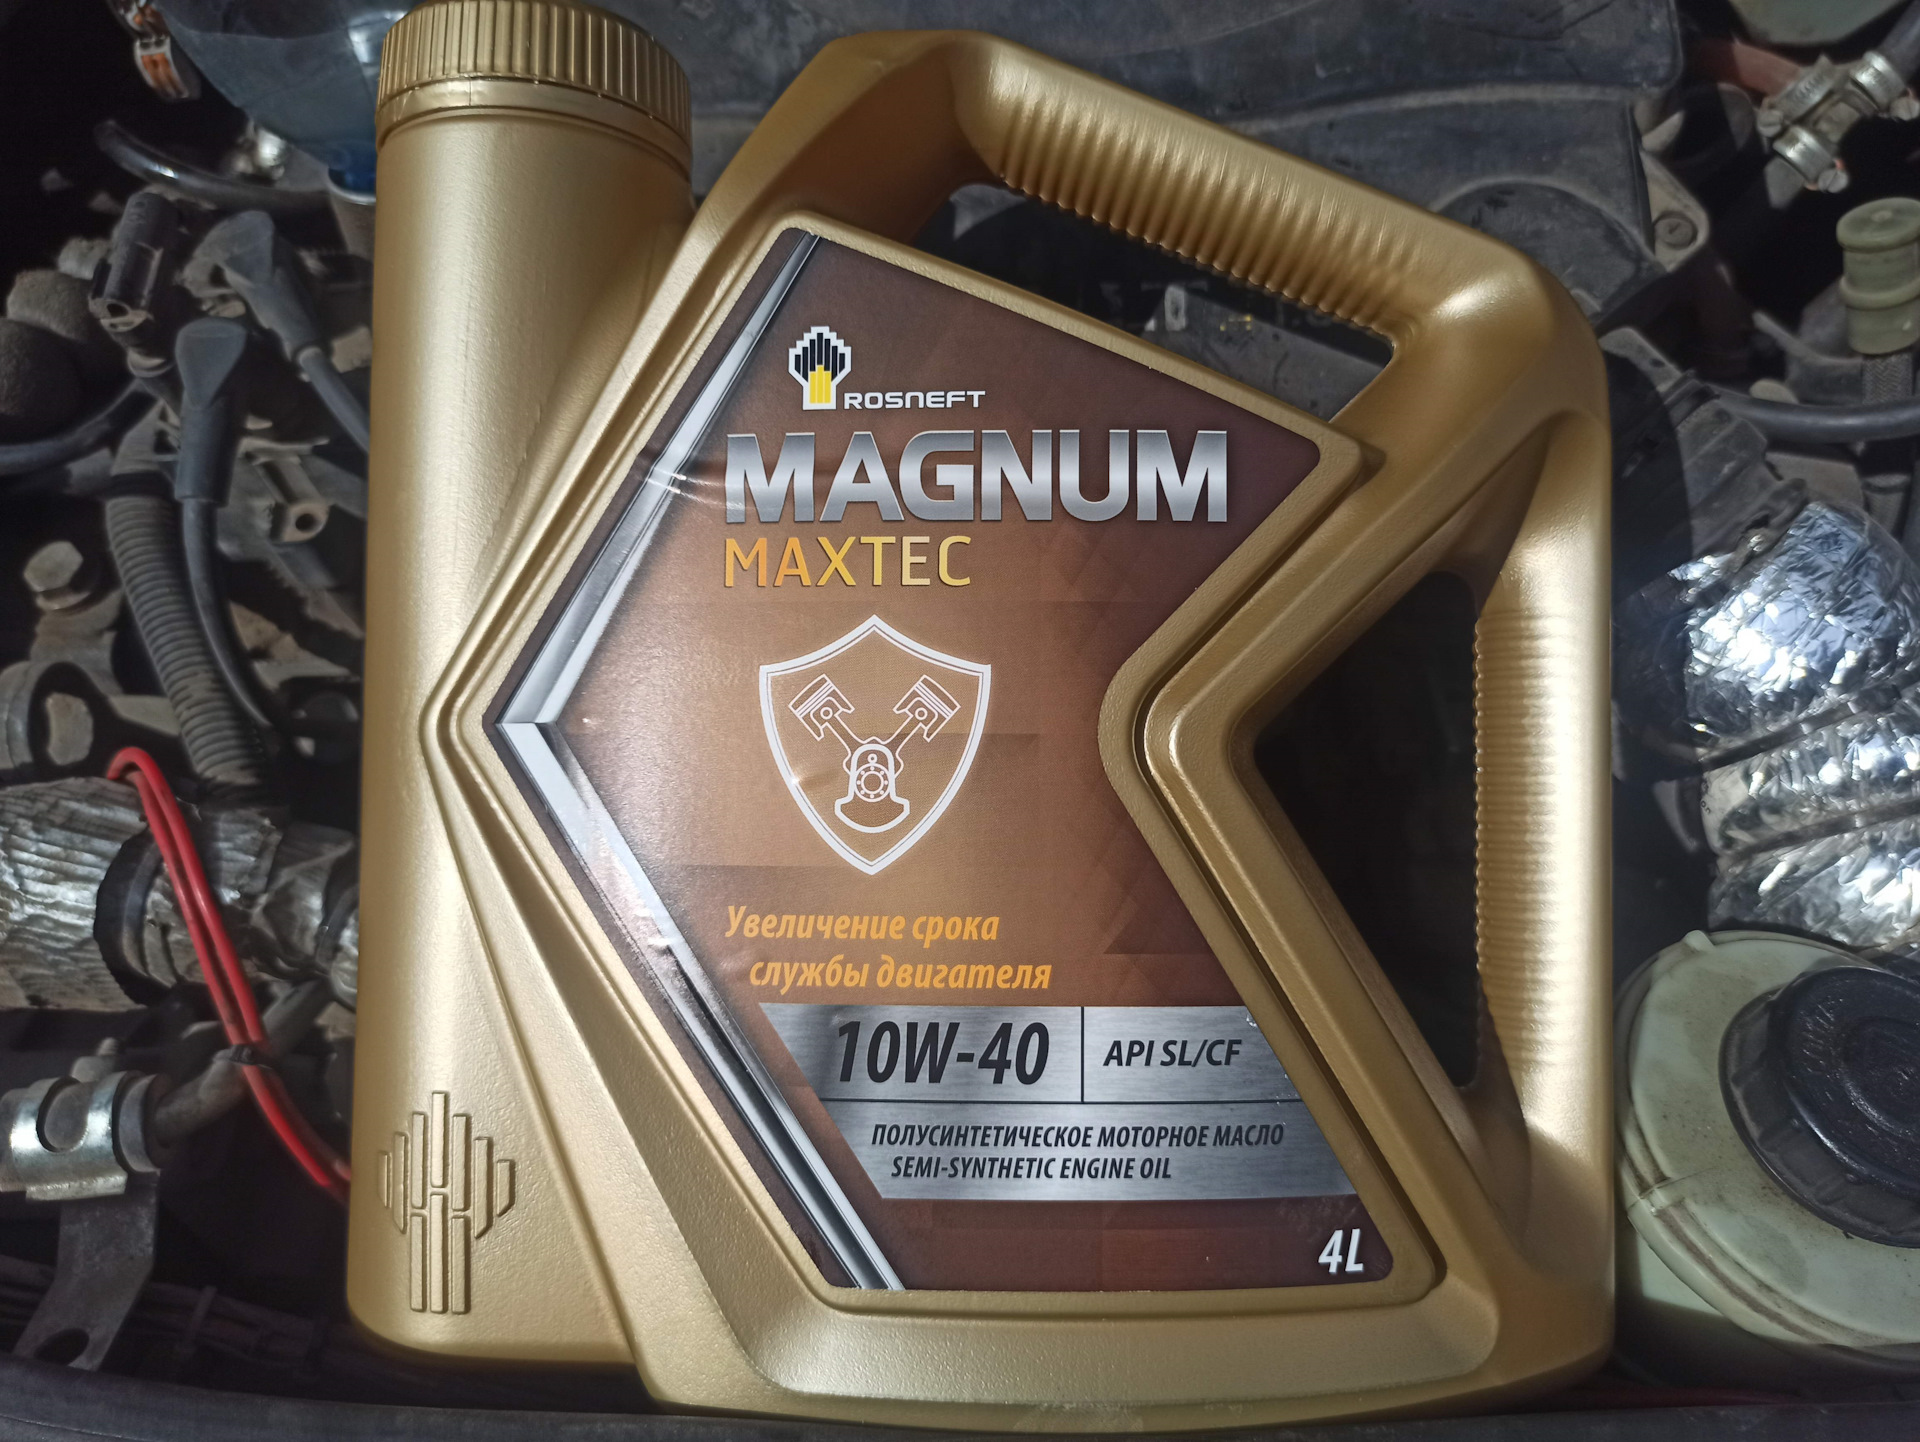 Роснефть магнум 10w 40 полусинтетика цена. Rosneft Magnum Maxtec 10w-40. Масло Магнум для 1zz. Роснефть Магнум 5х50. МП 300 масло ДВС 5 В 40.